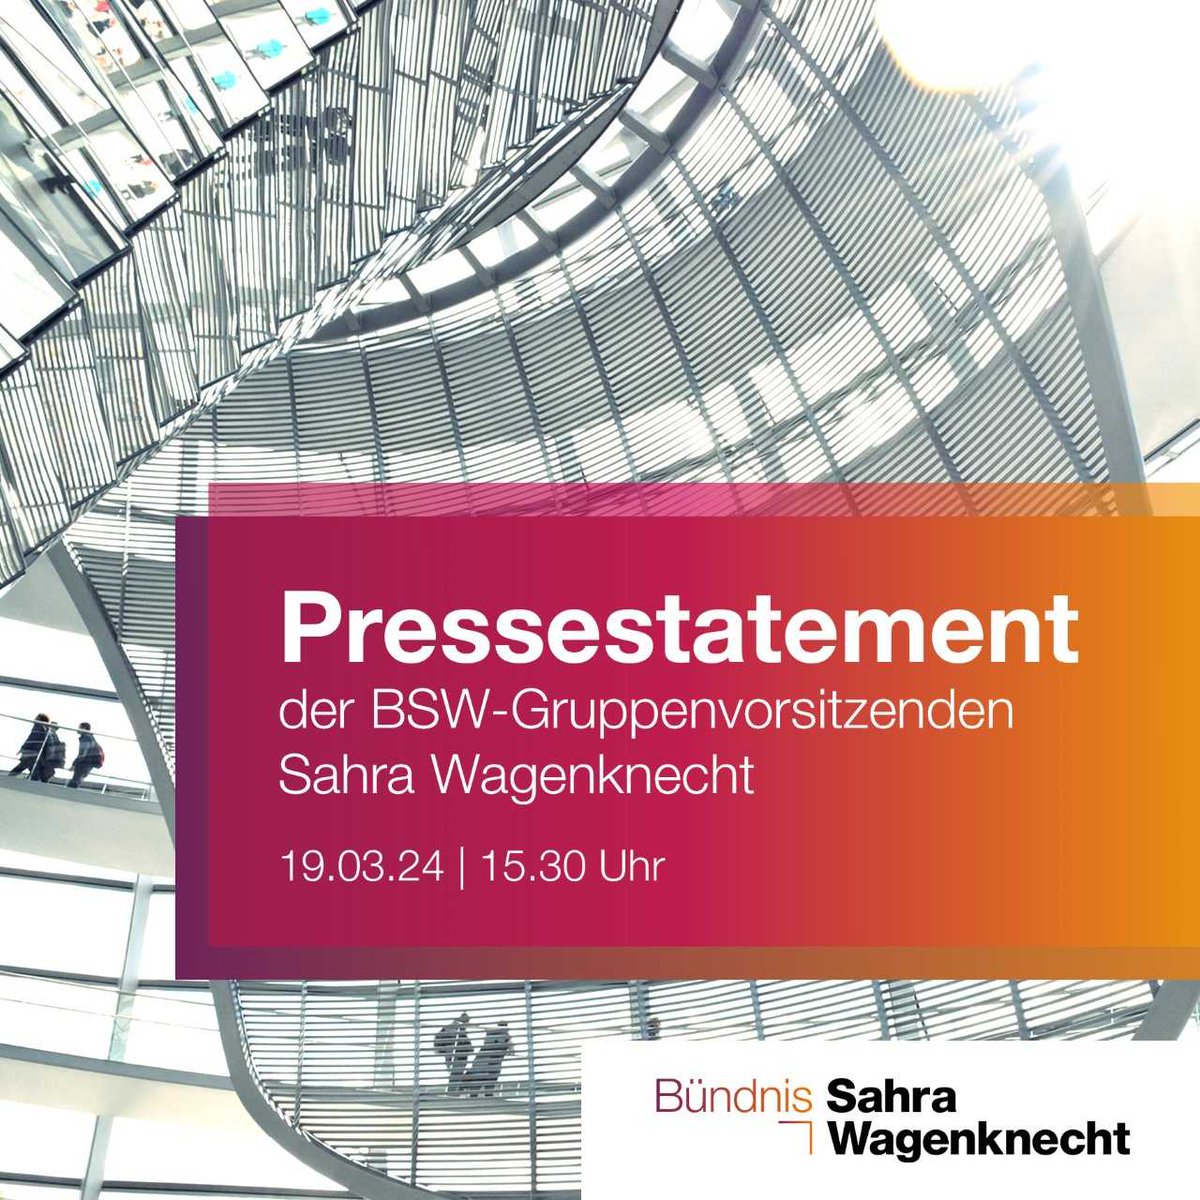 Seien Sie live dabei: Heute um 15.30 Uhr gebe ich mein #Pressestatement als Vorsitzende der #BSW-Gruppe im Deutschen Bundestag. Das Statement wird live auf meinem YouTube-Kanal übertragen: youtube.com/live/GhJpgQbmo…